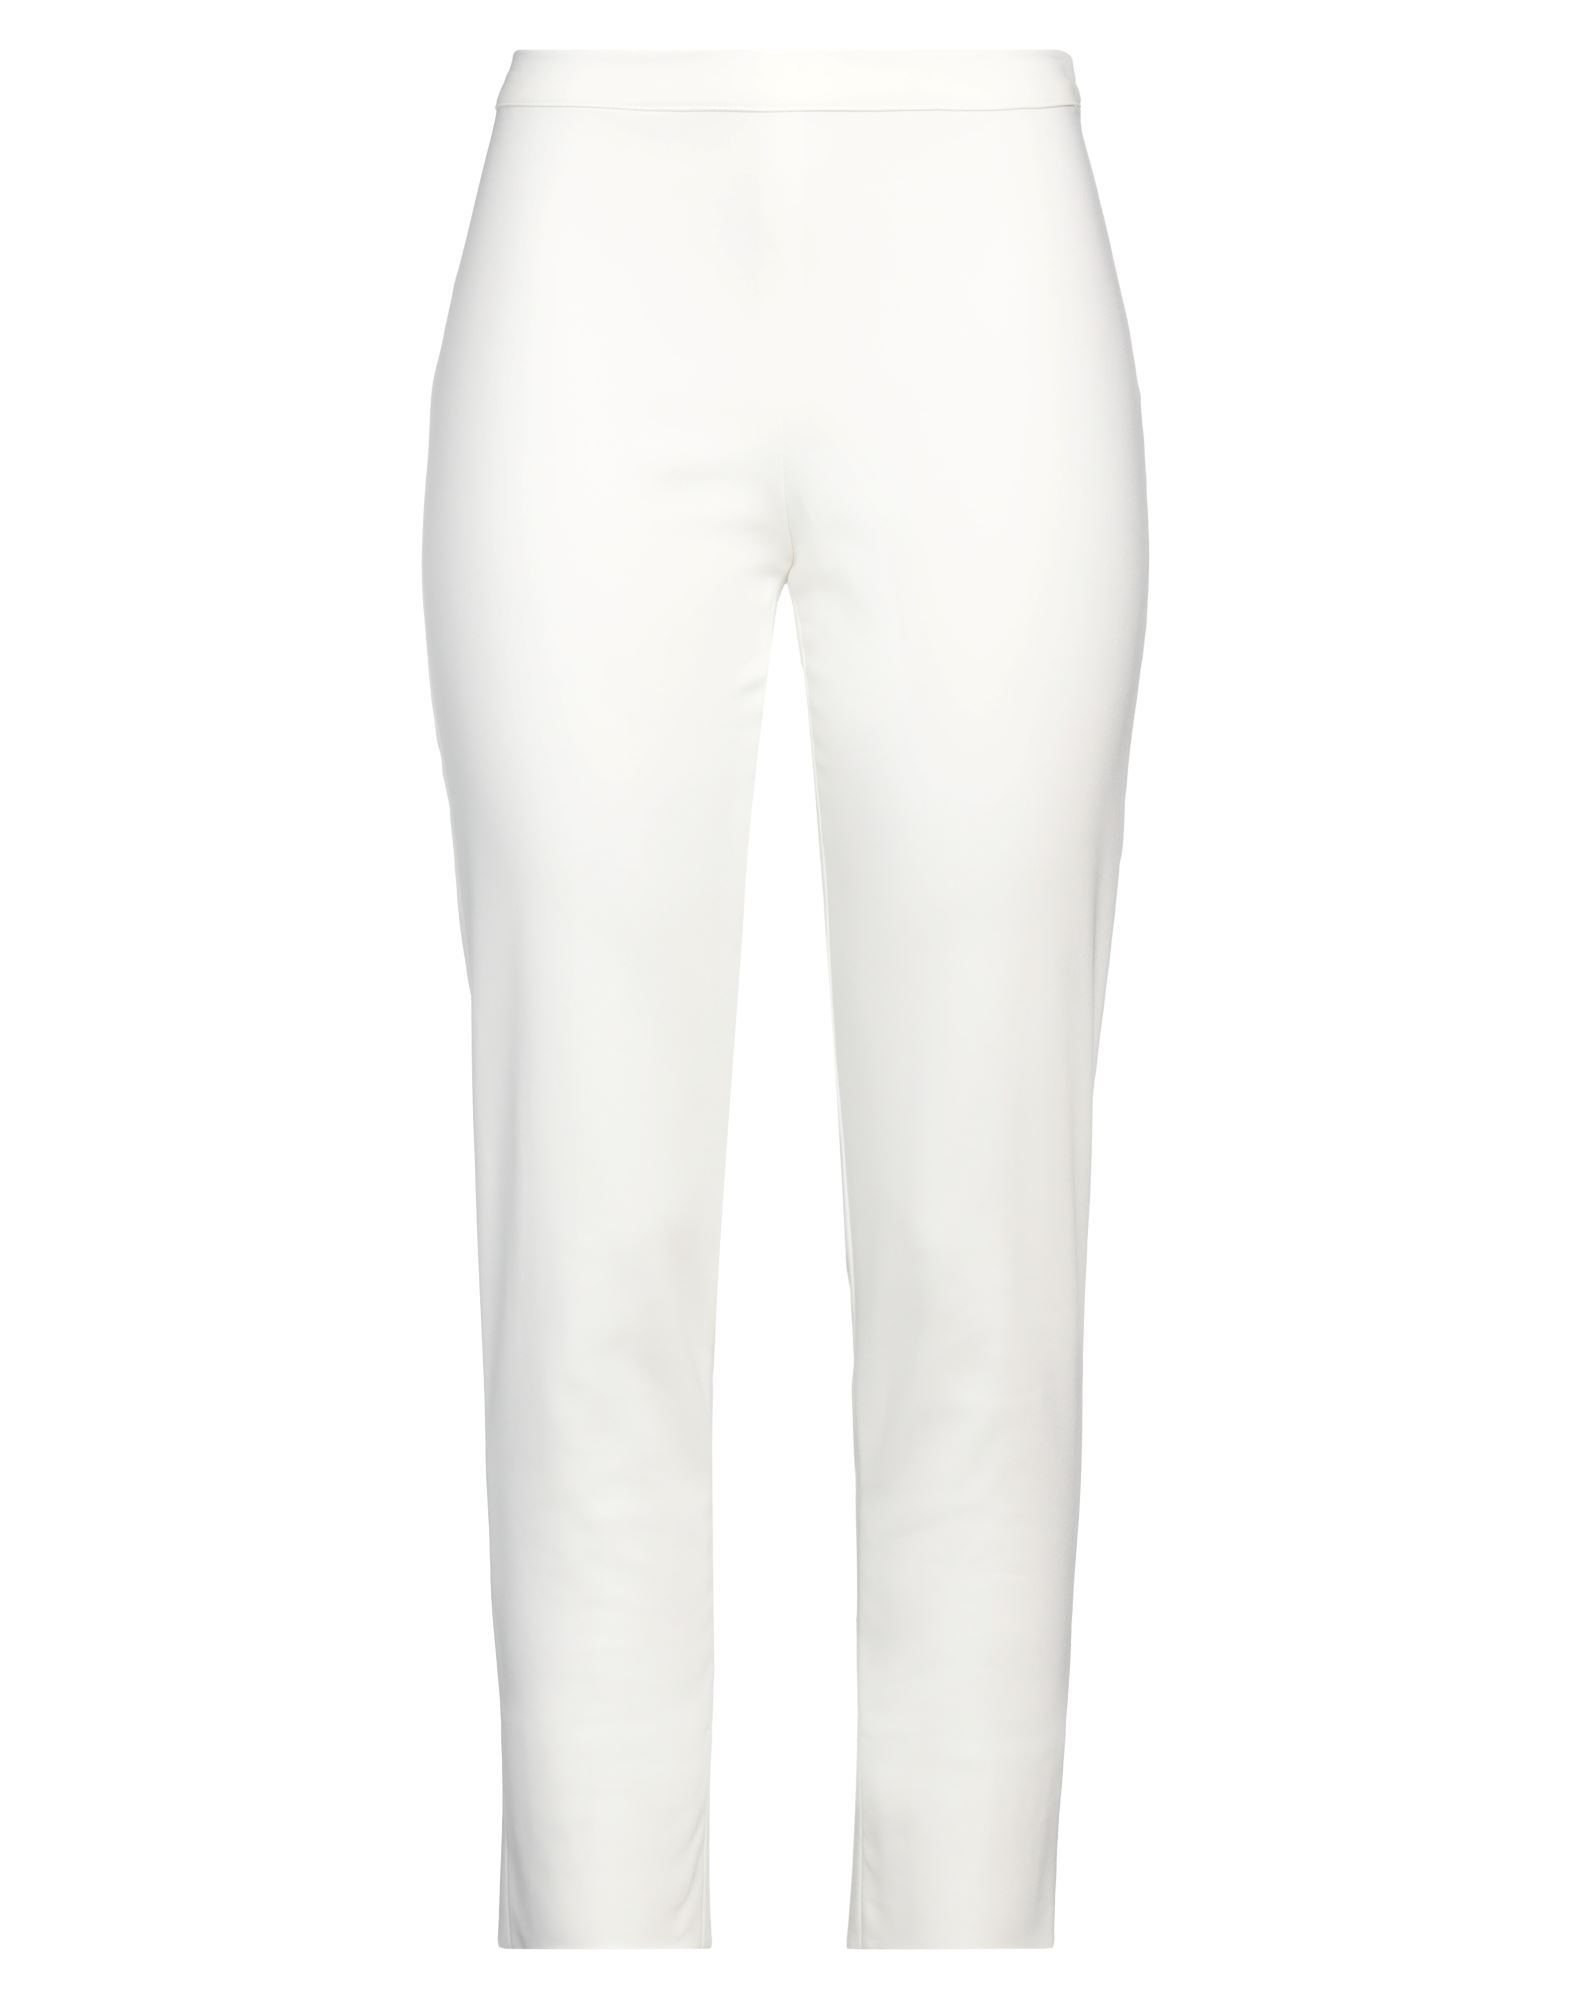 Diana Gallesi Woman Pants White Size 12 Cotton, Polyamide, Elastane